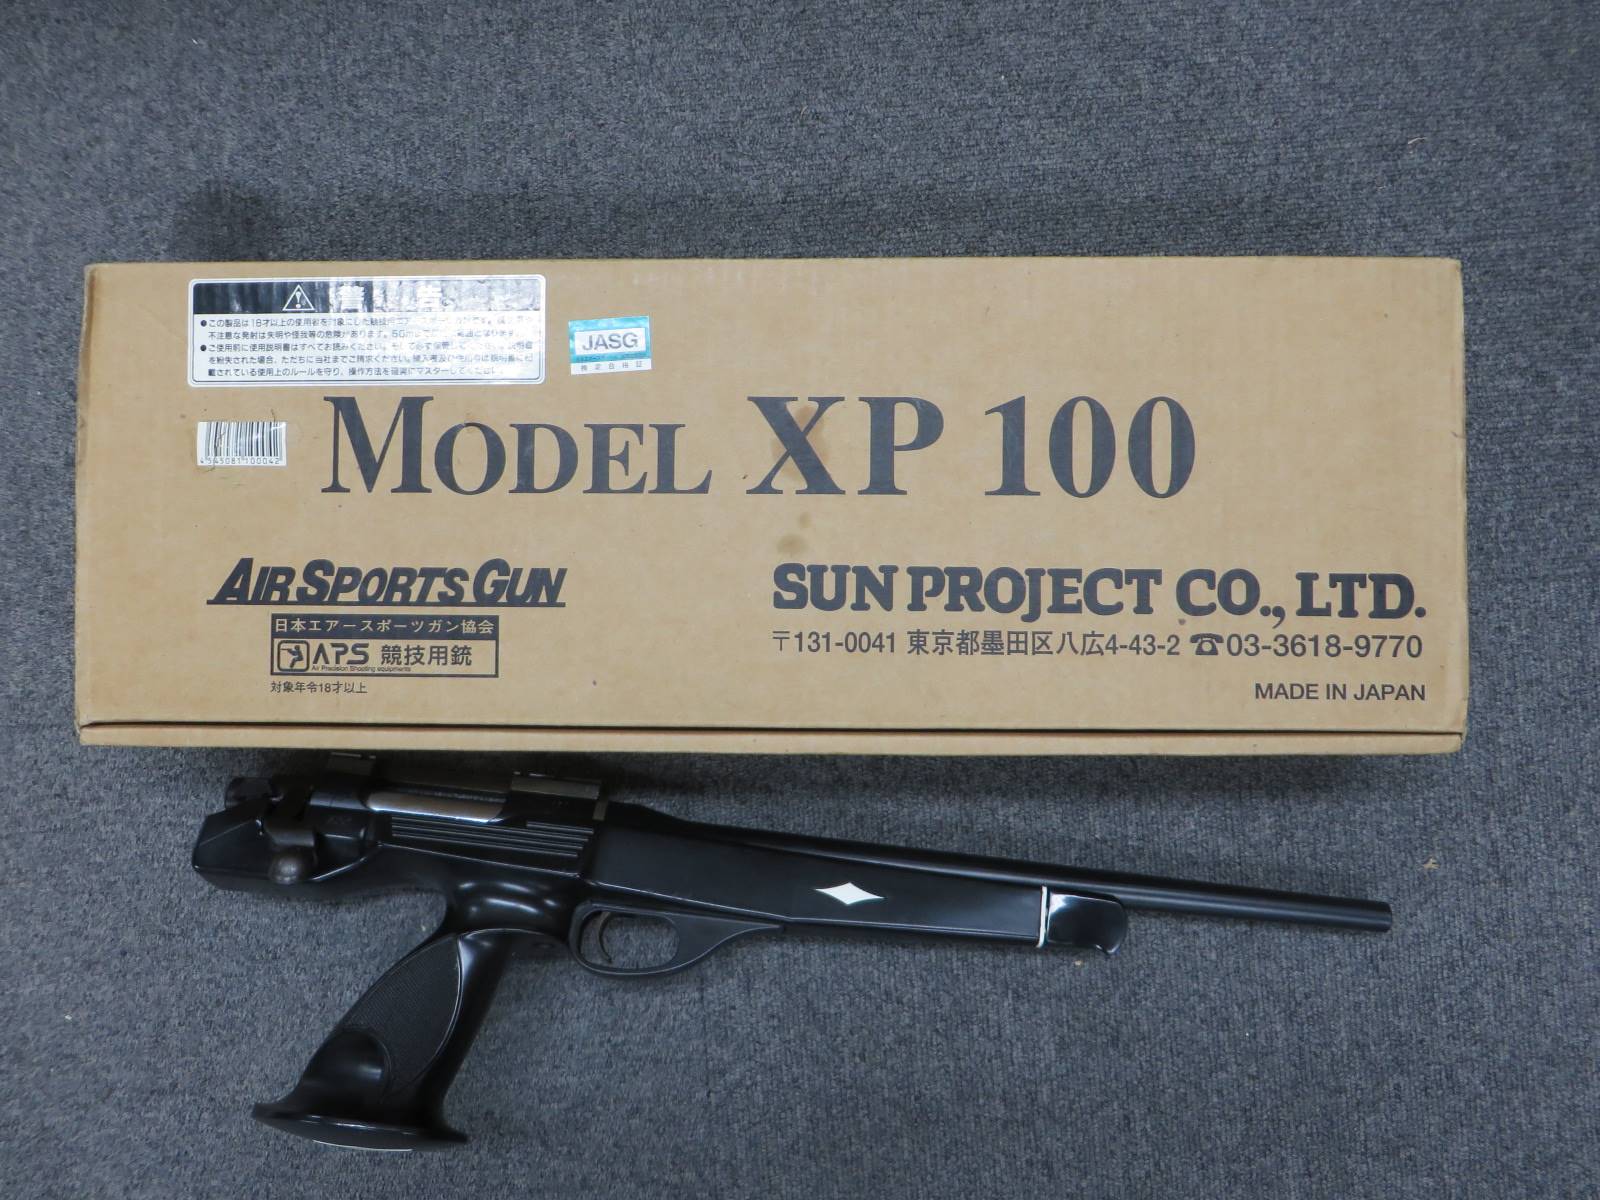 【サンプロジェクト】Model XP100 バーミントスペシャル